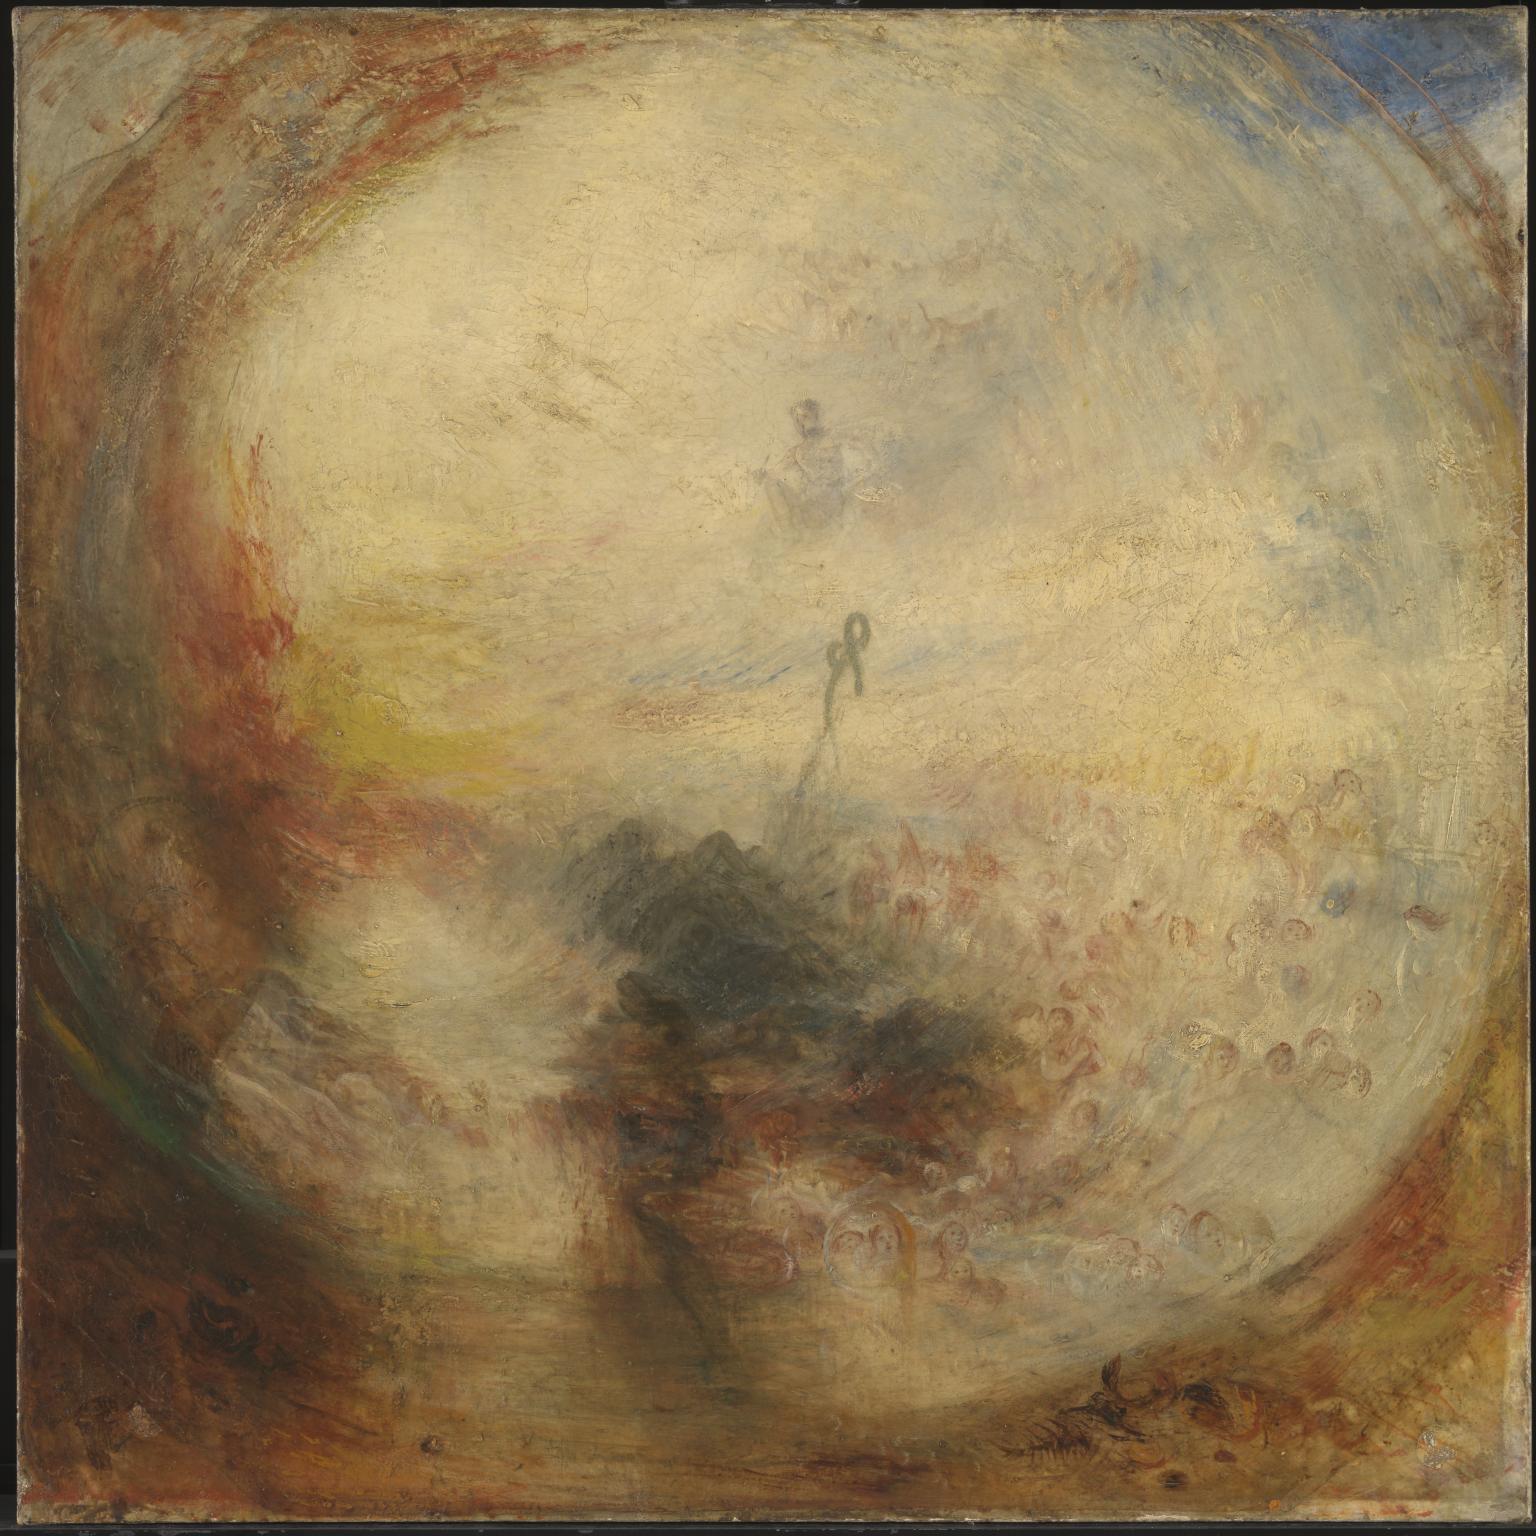 빛과 색 by Joseph Mallord William Turner - 1843년 - 787 x 787 cm 